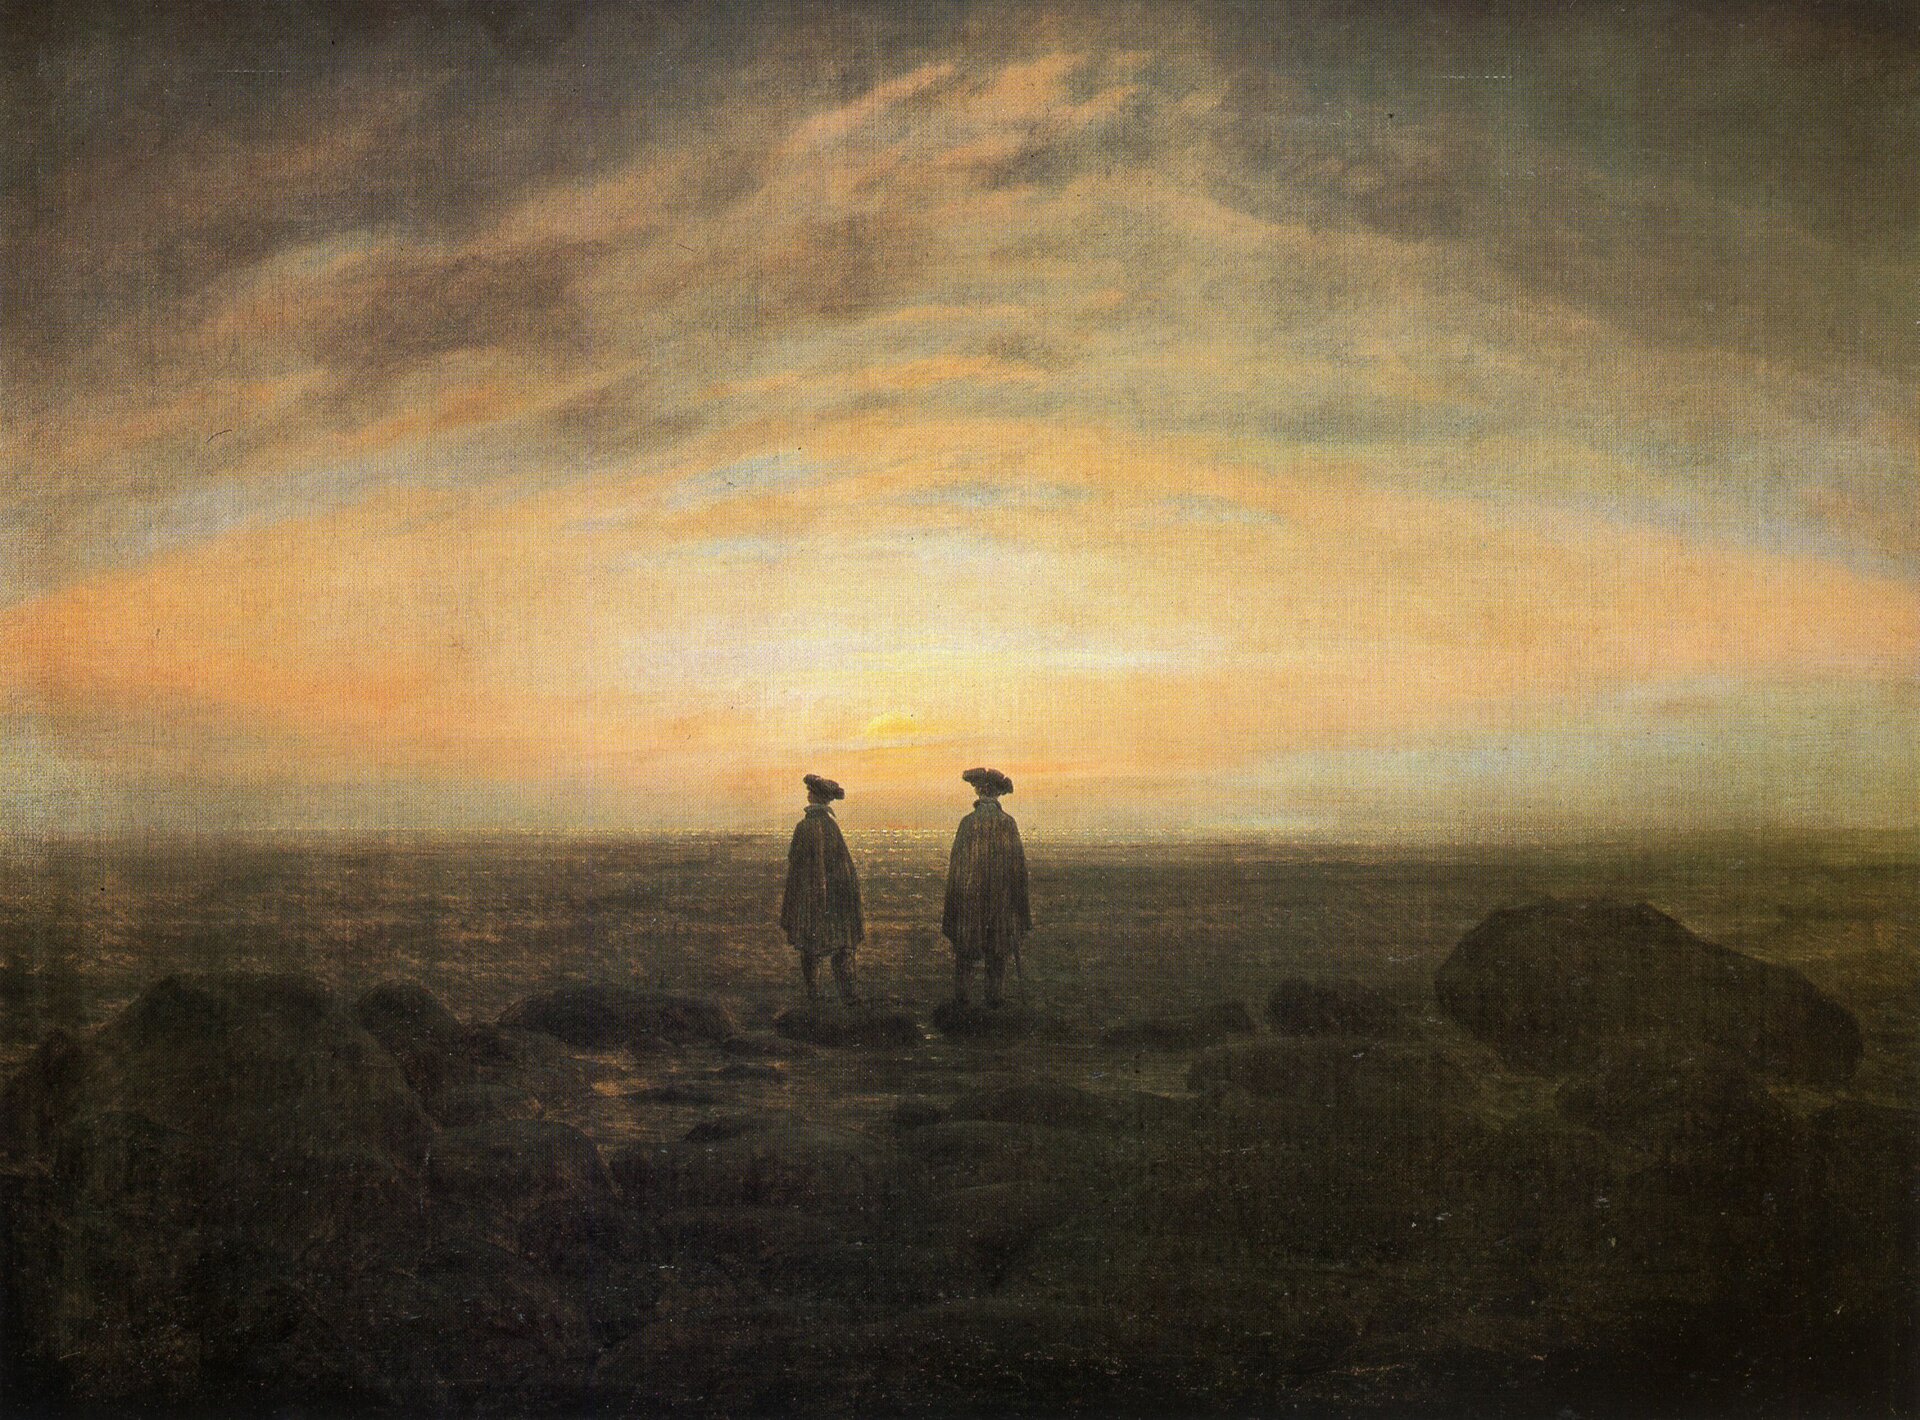 Ilustracja przedstawia obraz, na którym znajdują się dwaj mężczyźni. Mężczyźni stoją obok siebie, na brzegu morza. Dookoła nich jest pusto. Ubrani są oni w peleryny, na głowie mają kapelusze. Na drugim planie, na niebie wschód słońca. Im bliżej miejsca, w którym słońce wschodzi, tym niebo jest jaśniejsze.